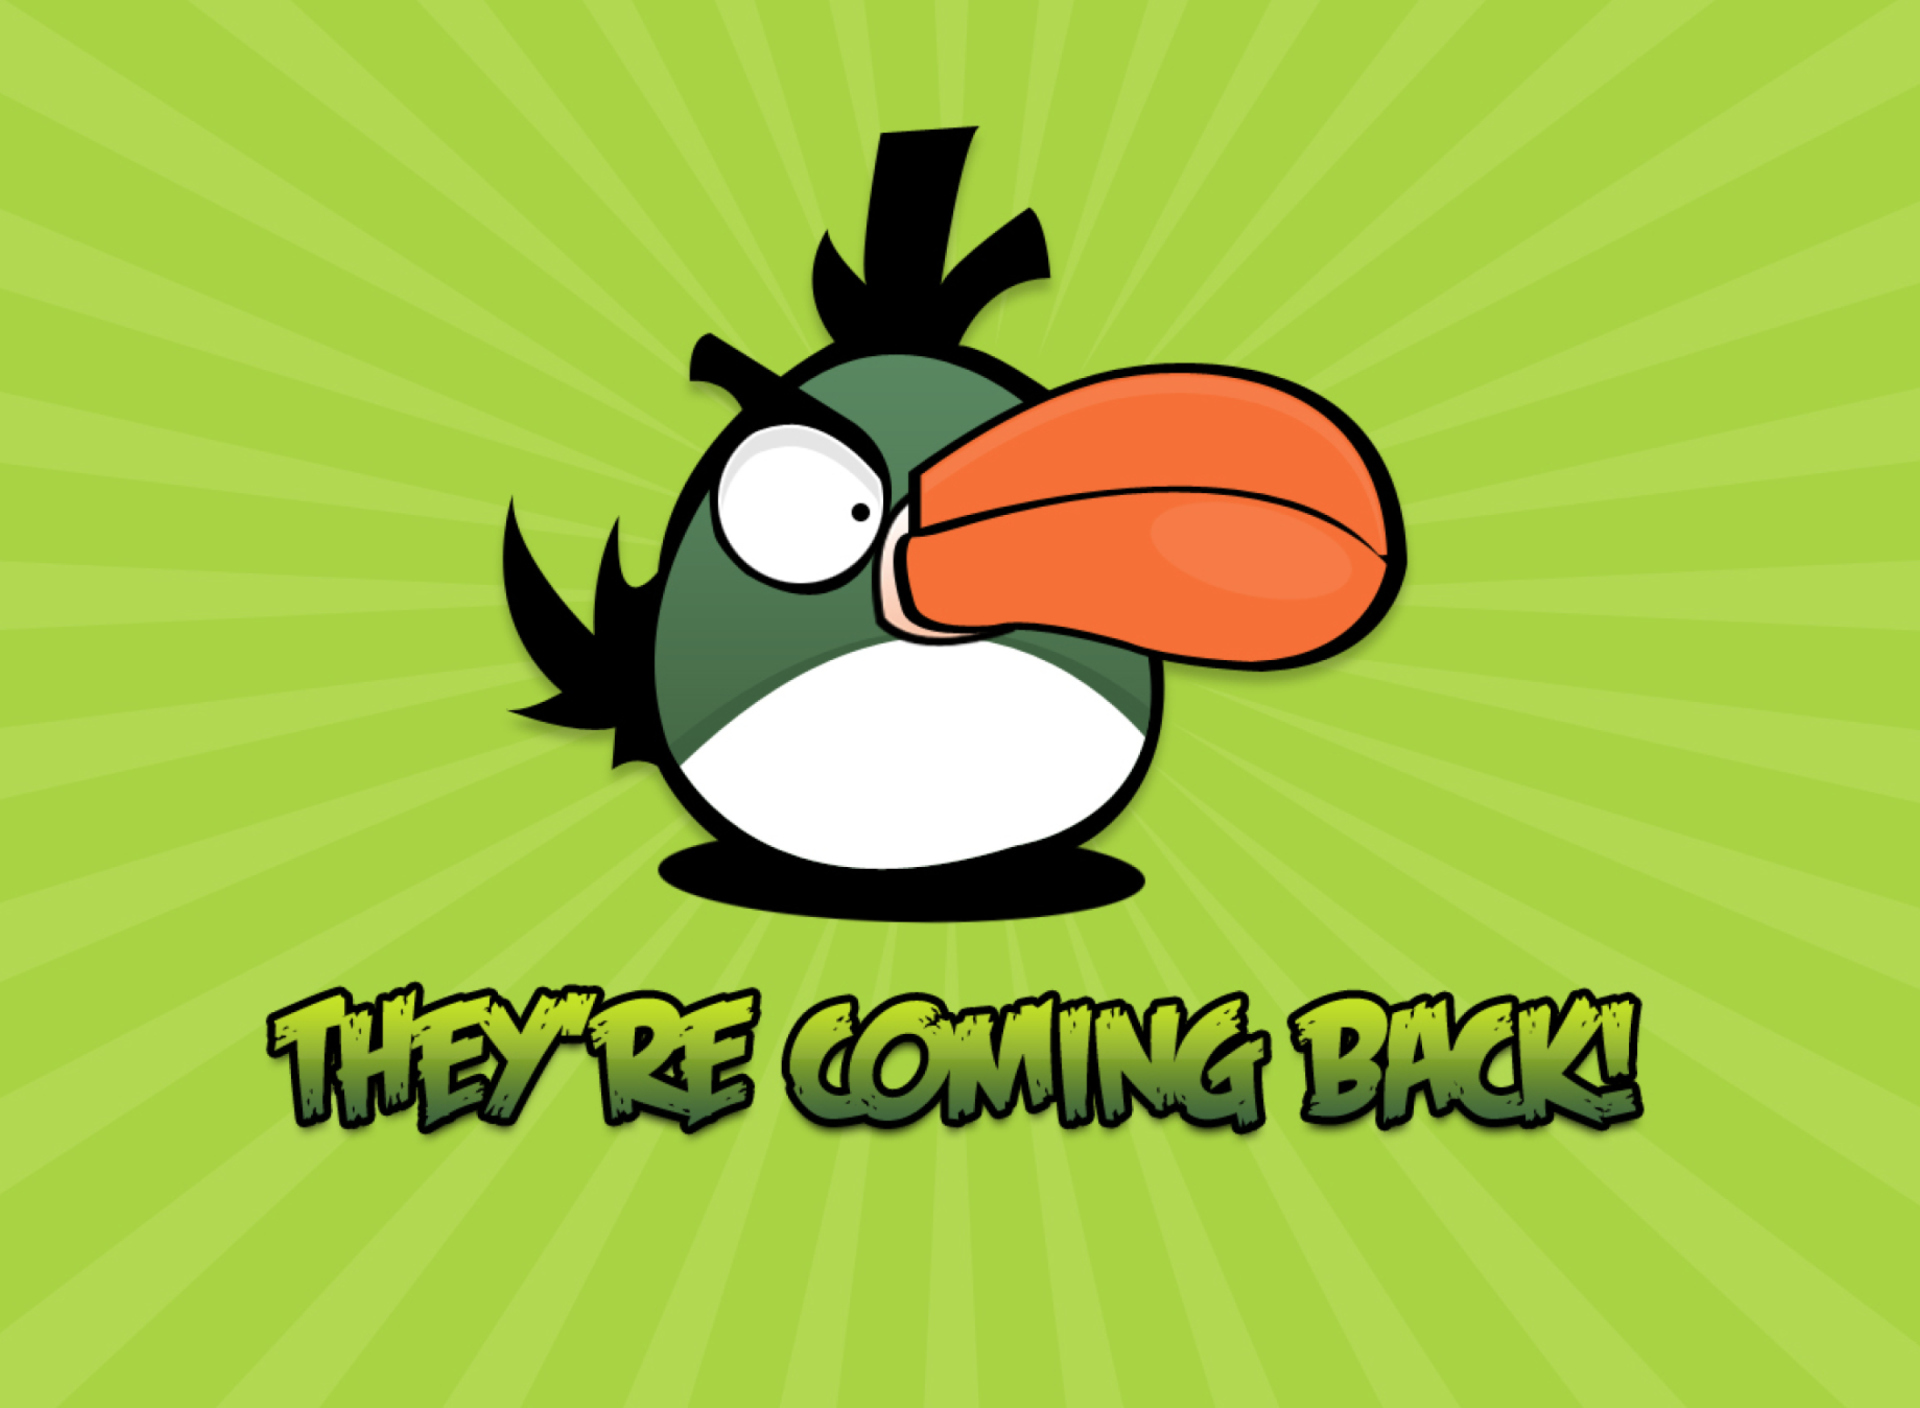 Angrybird Green screenshot #1 1920x1408